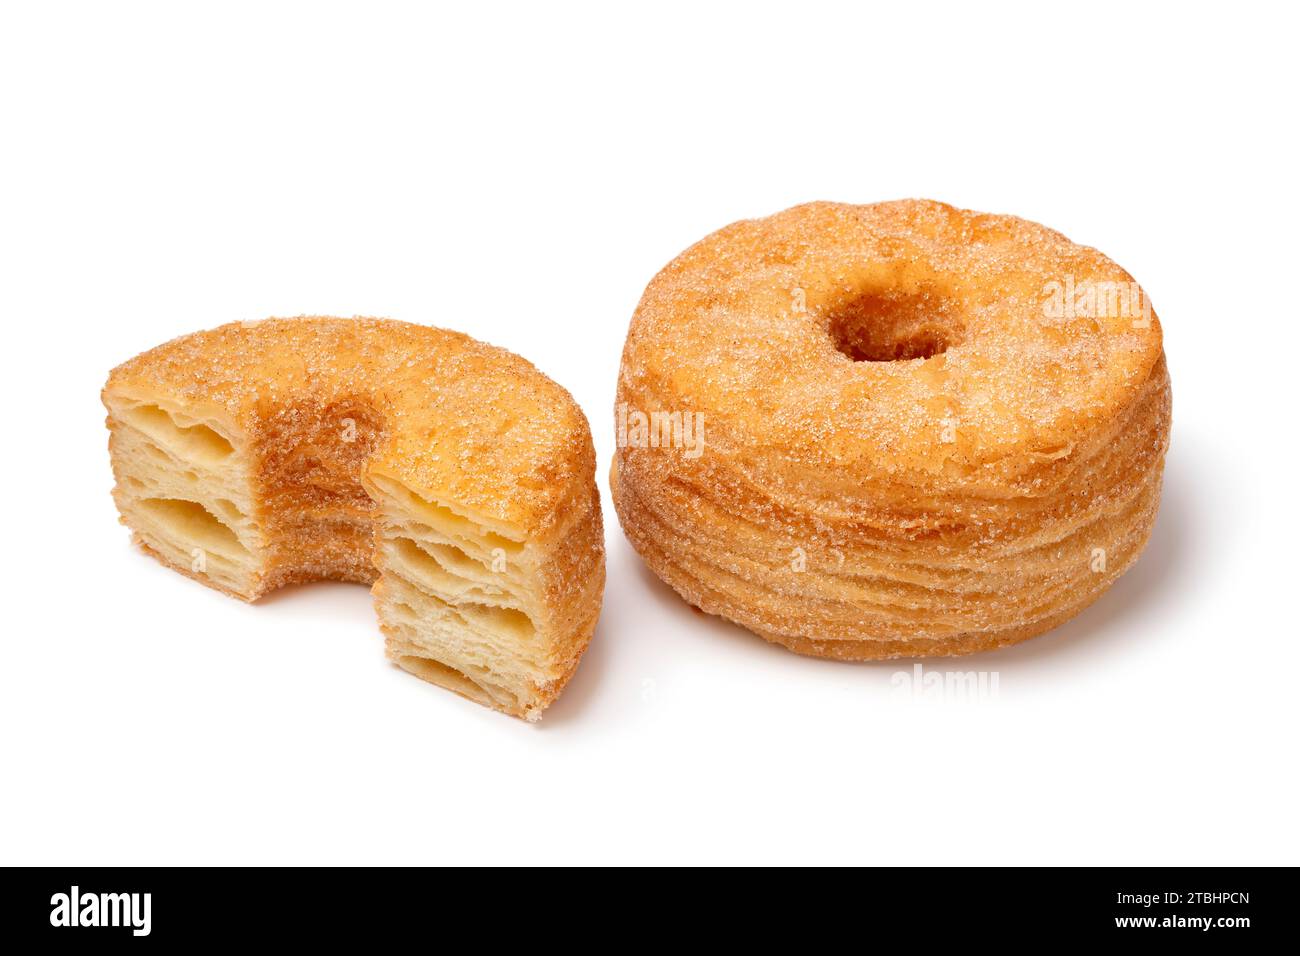 Gustosi Cronuts dolci e alla cannella, interi e tagliati a metà, isolati su fondo bianco Foto Stock